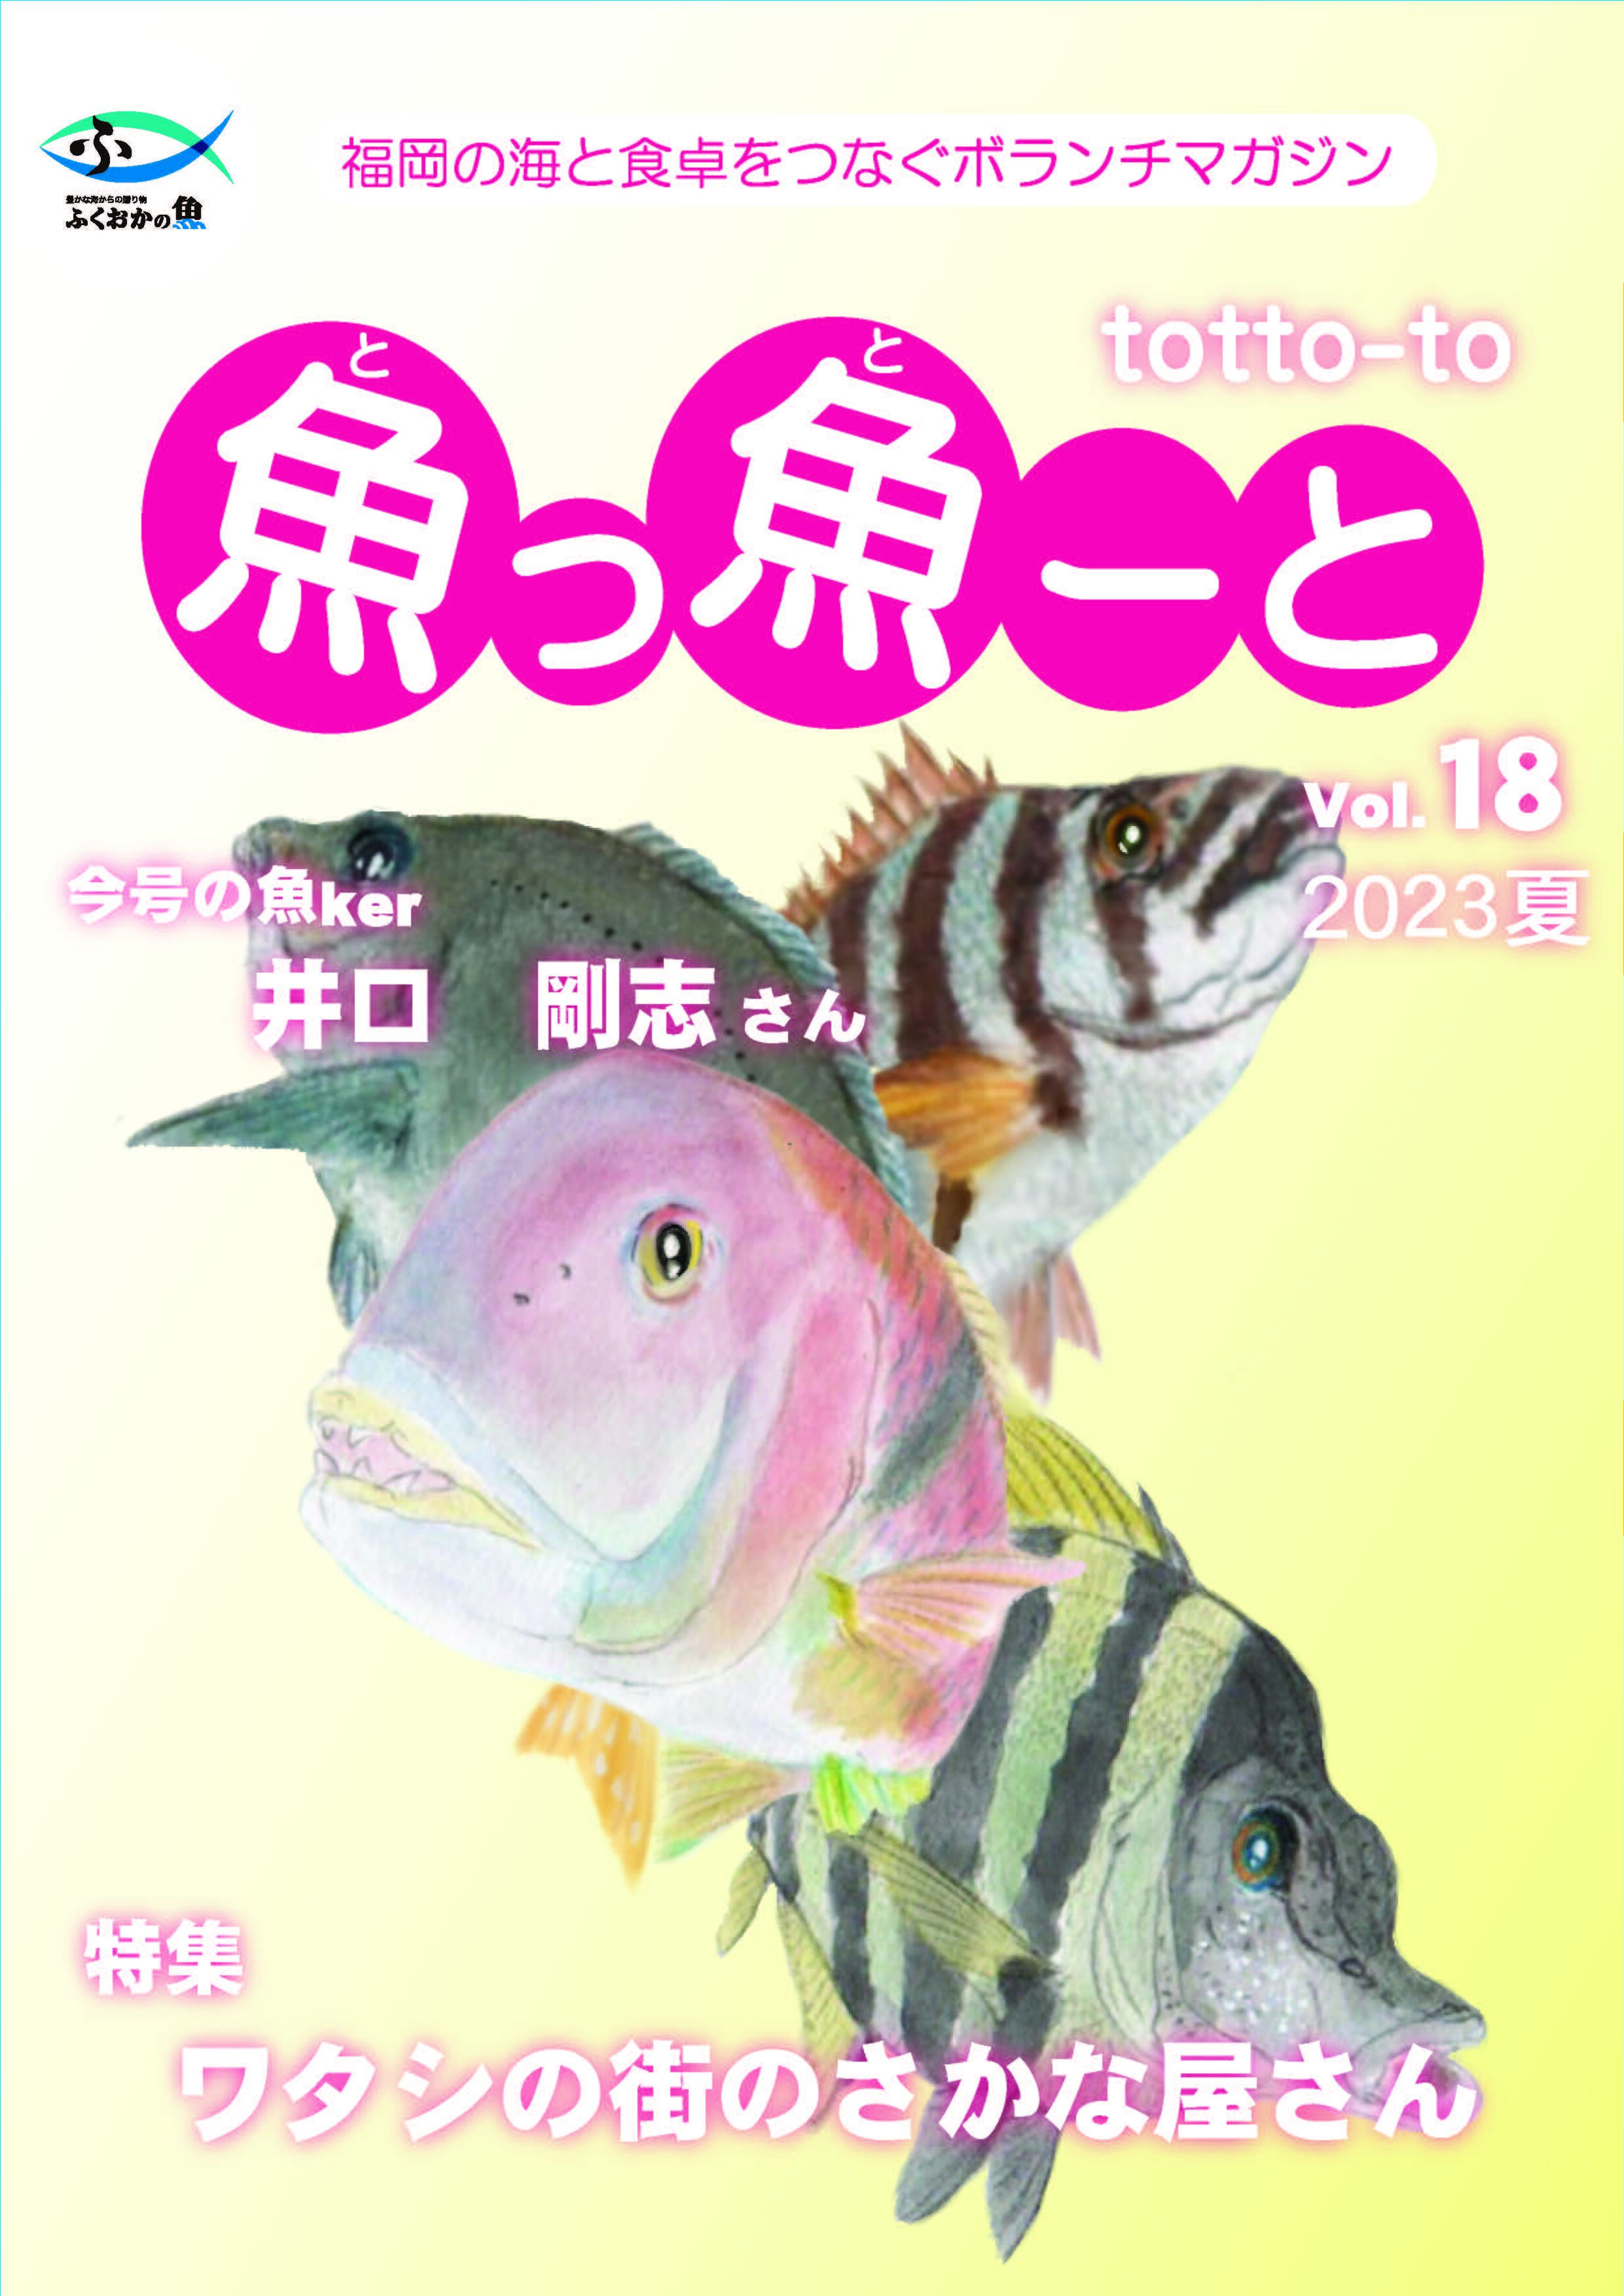 ふくおか地魚情報誌「魚っ魚ーと」Vol.18